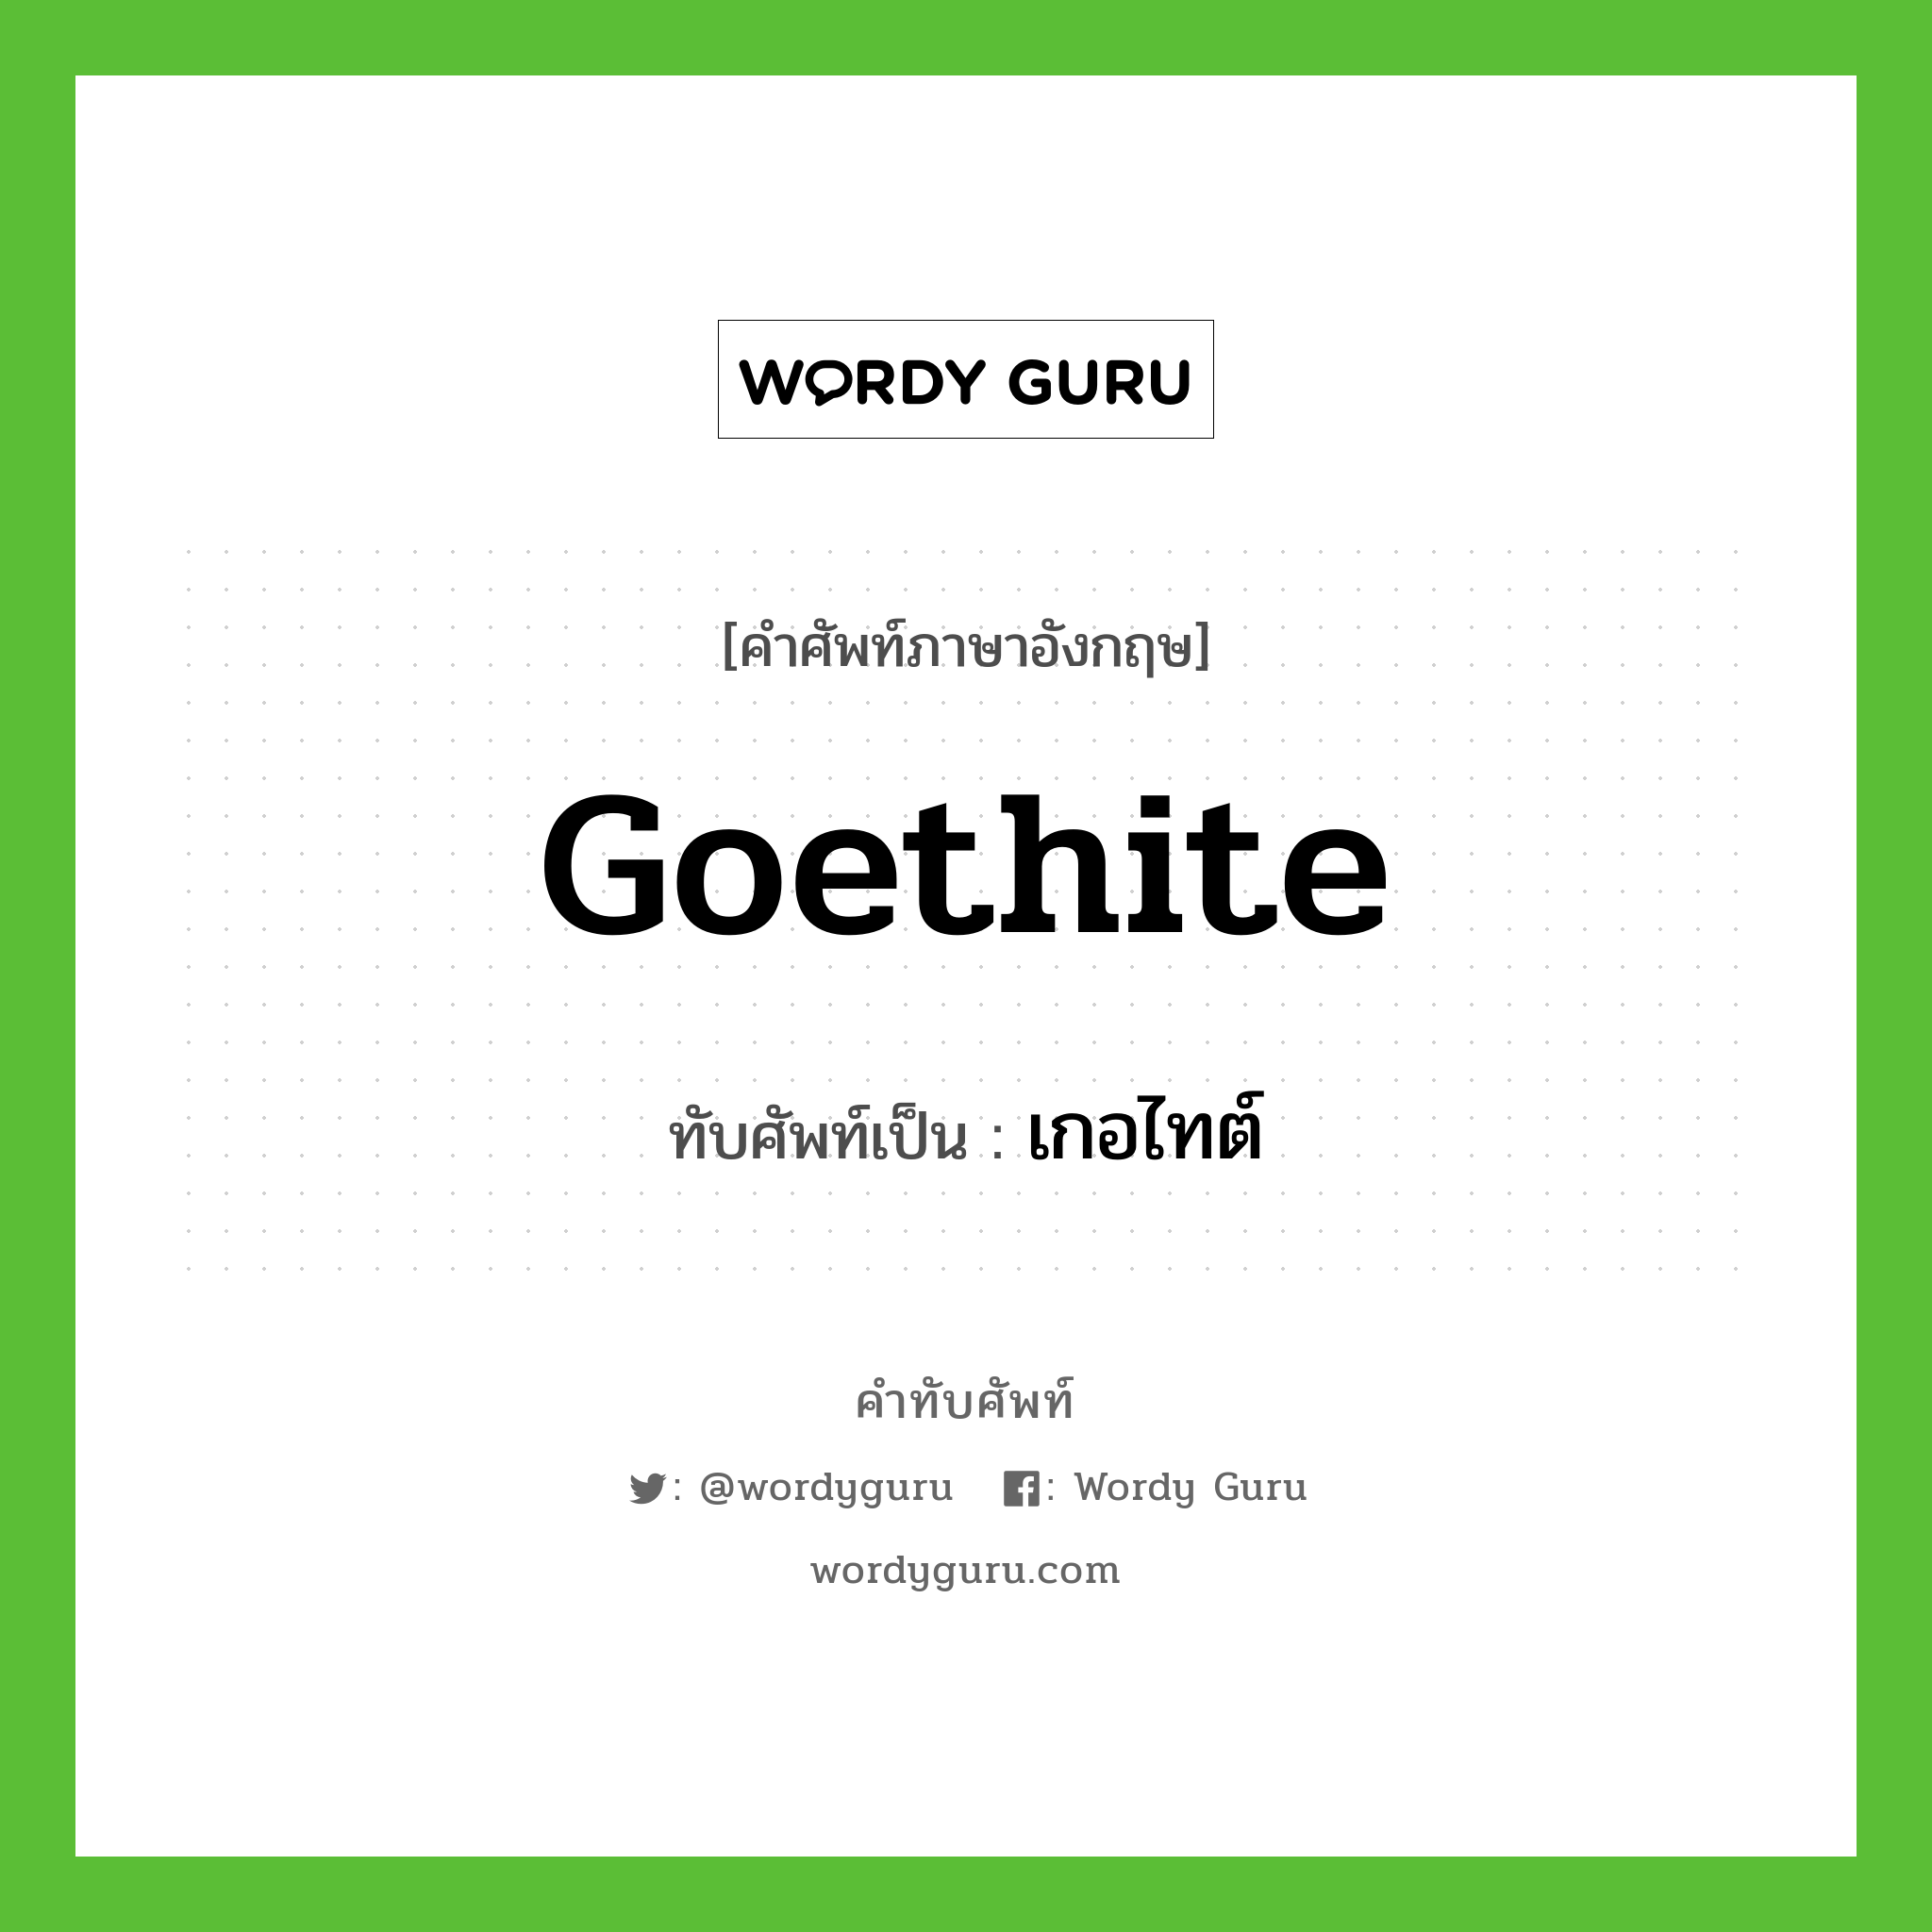 goethite เขียนเป็นคำไทยว่าอะไร?, คำศัพท์ภาษาอังกฤษ goethite ทับศัพท์เป็น เกอไทต์